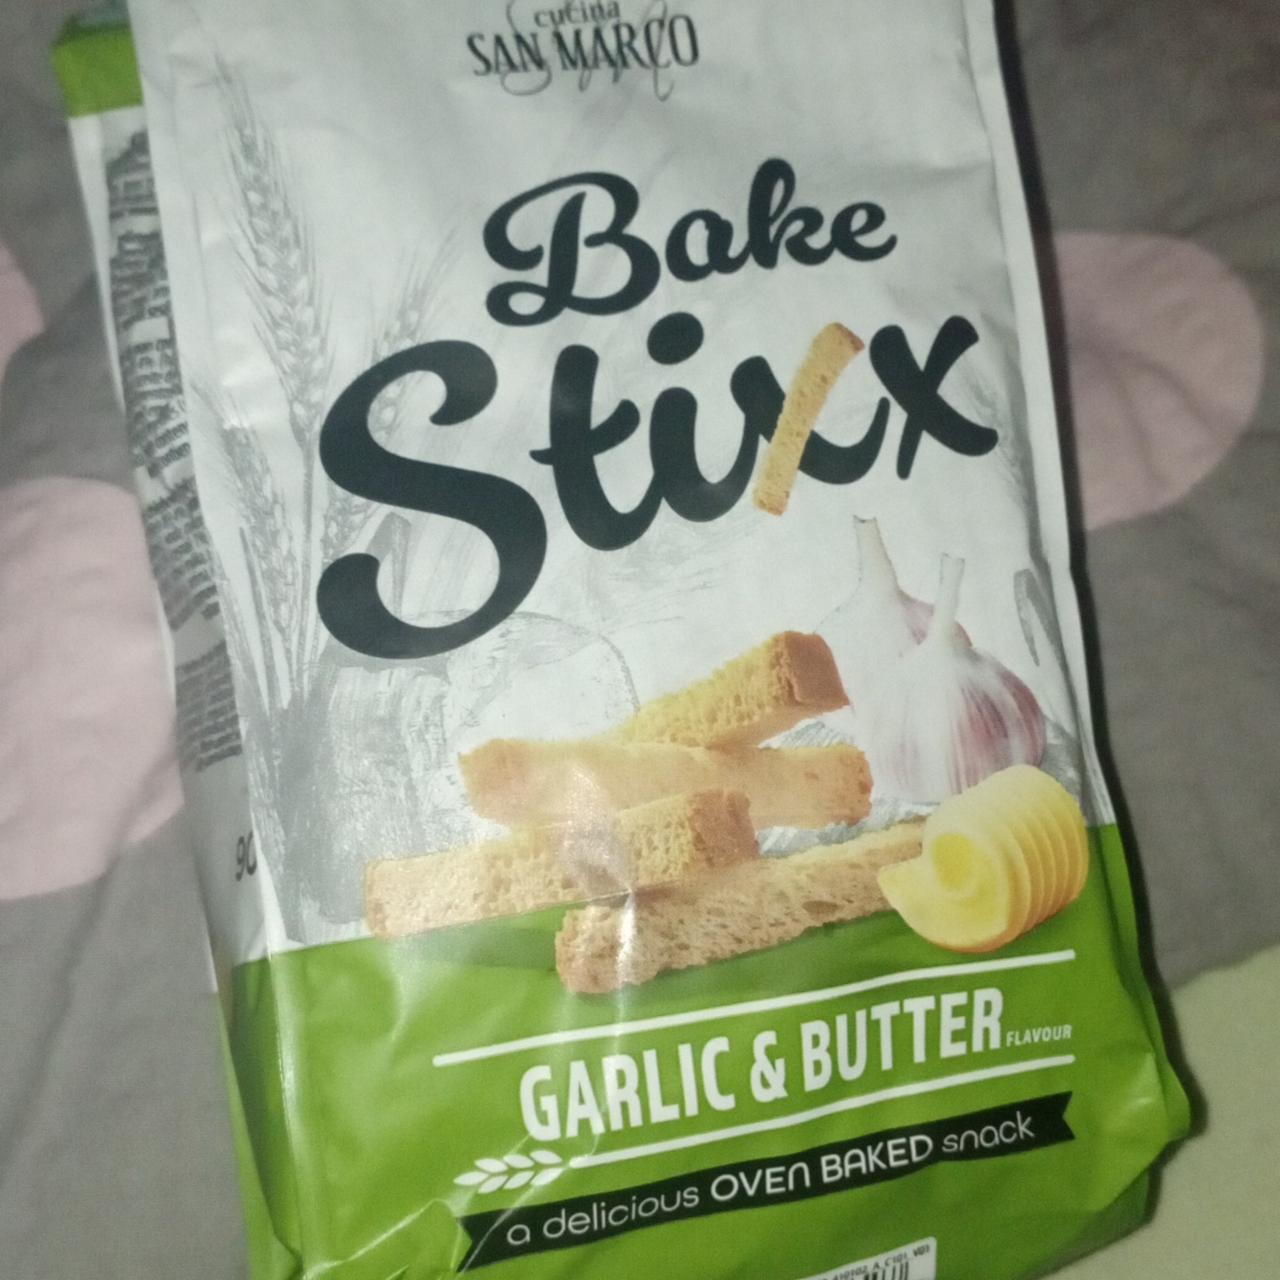 Fotografie - Bake Stixx garlic & butter San Marcos